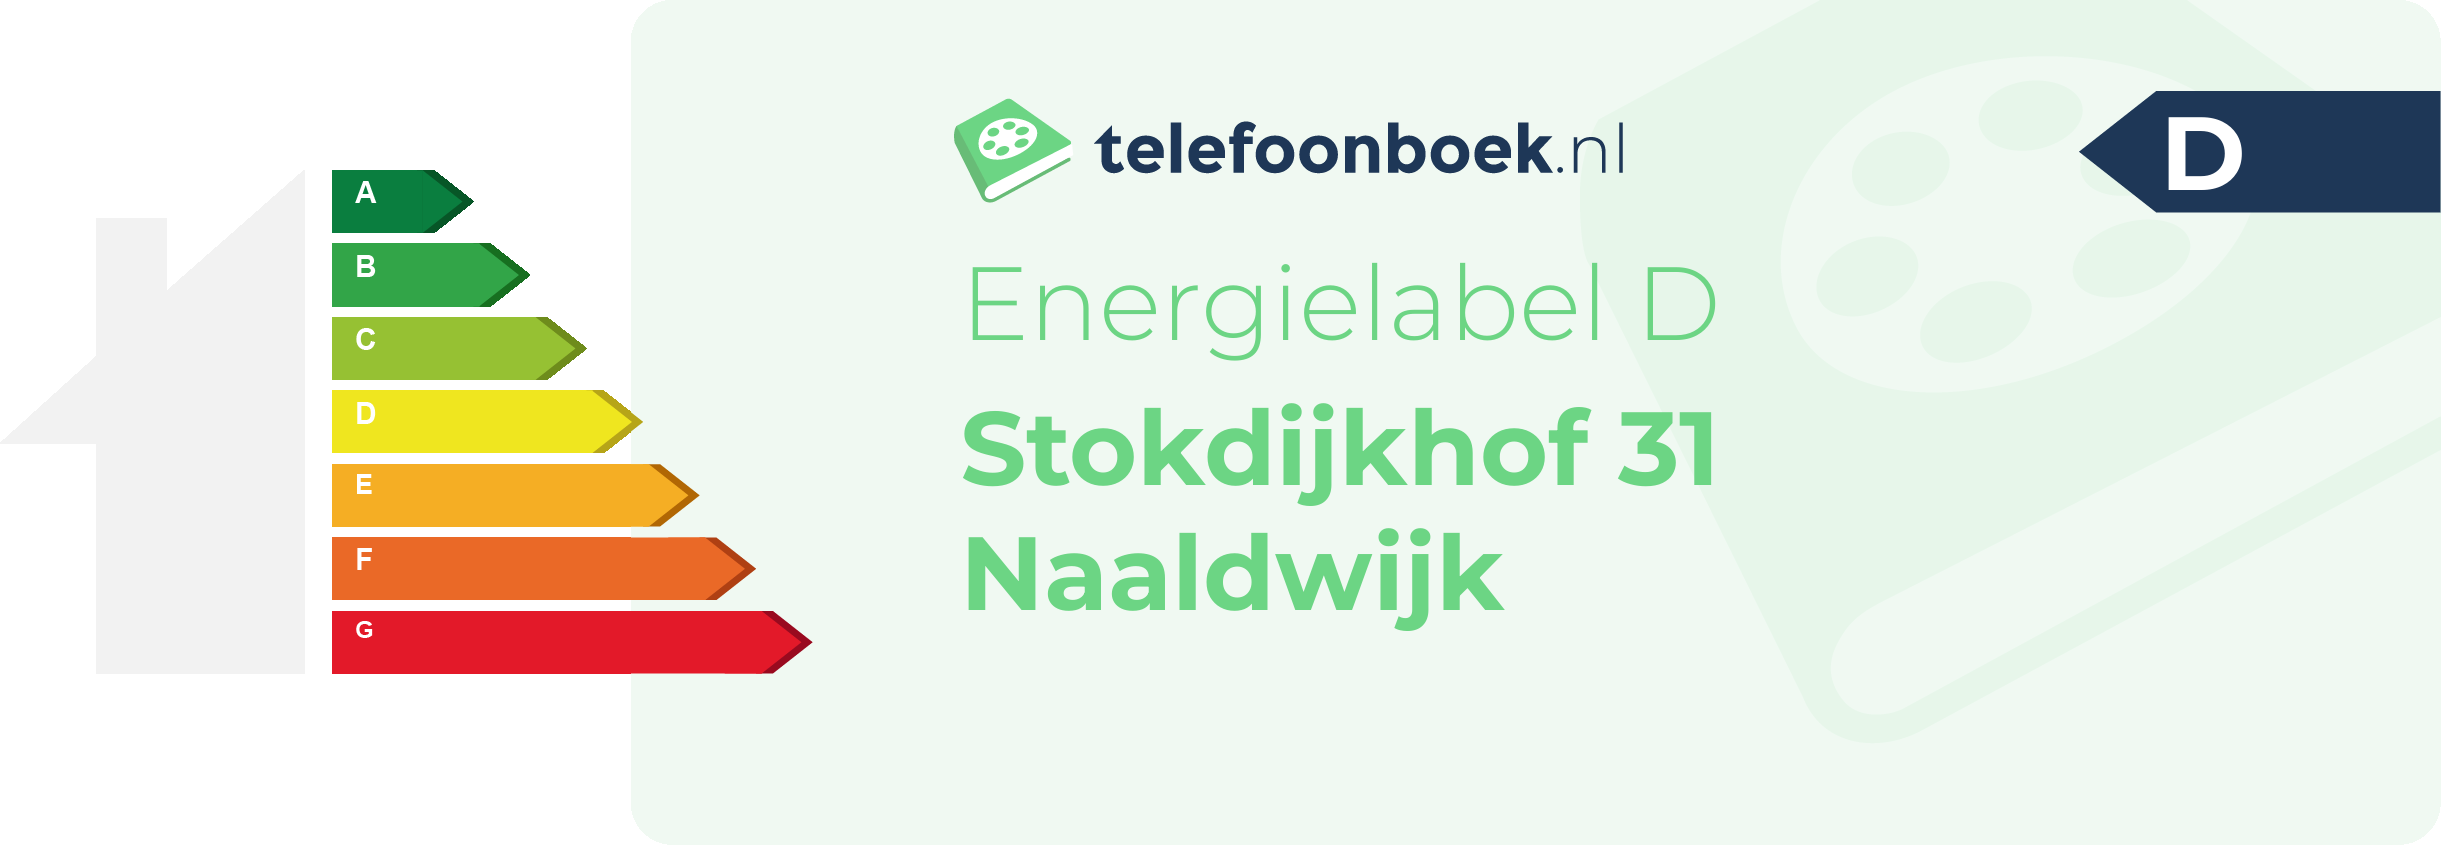 Energielabel Stokdijkhof 31 Naaldwijk